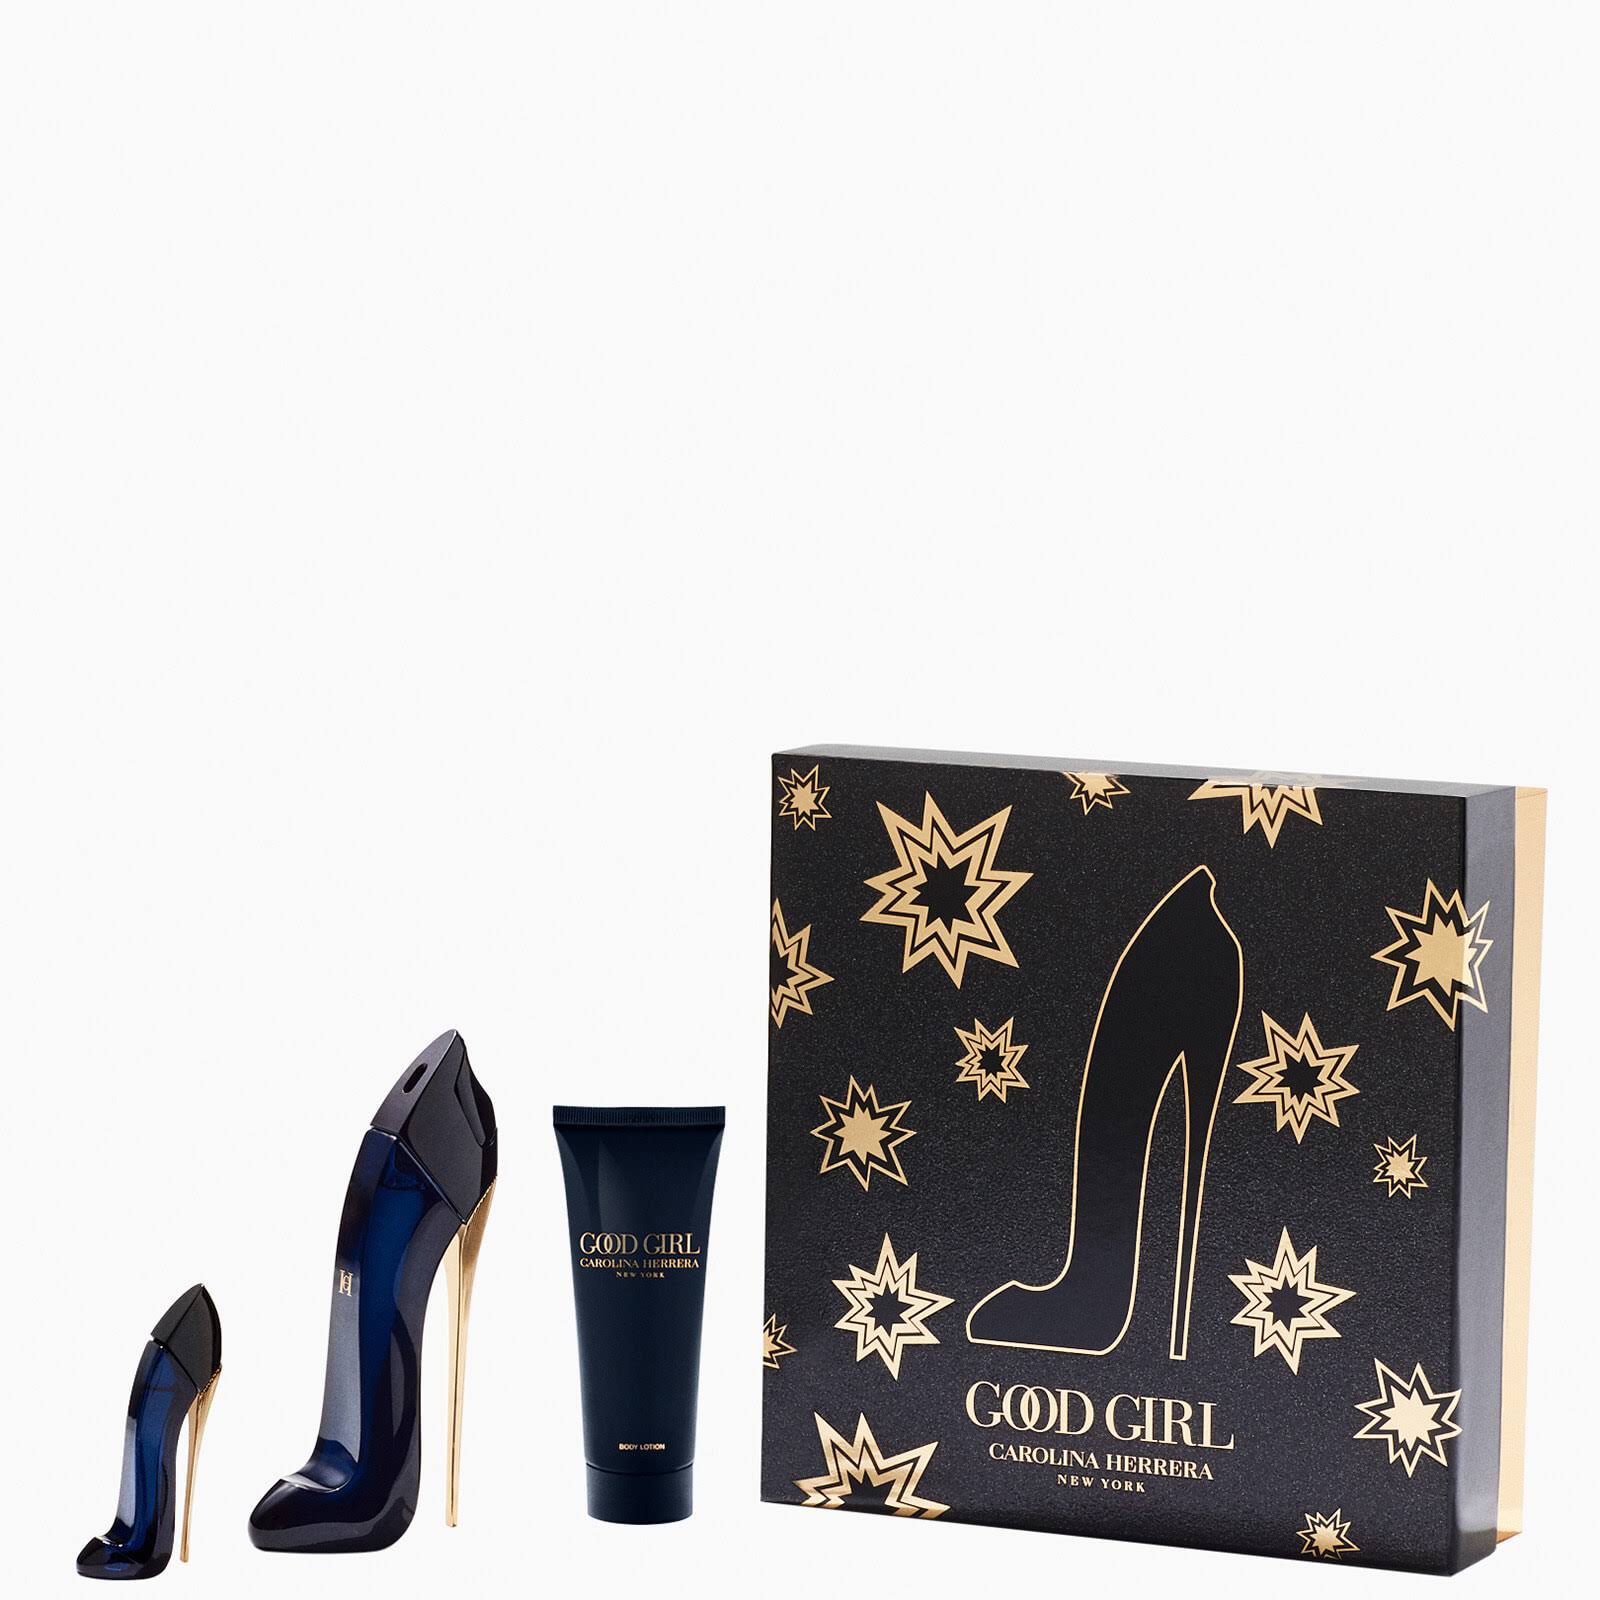 Carolina Herrera Good Girl Eau de Parfum Gift Set